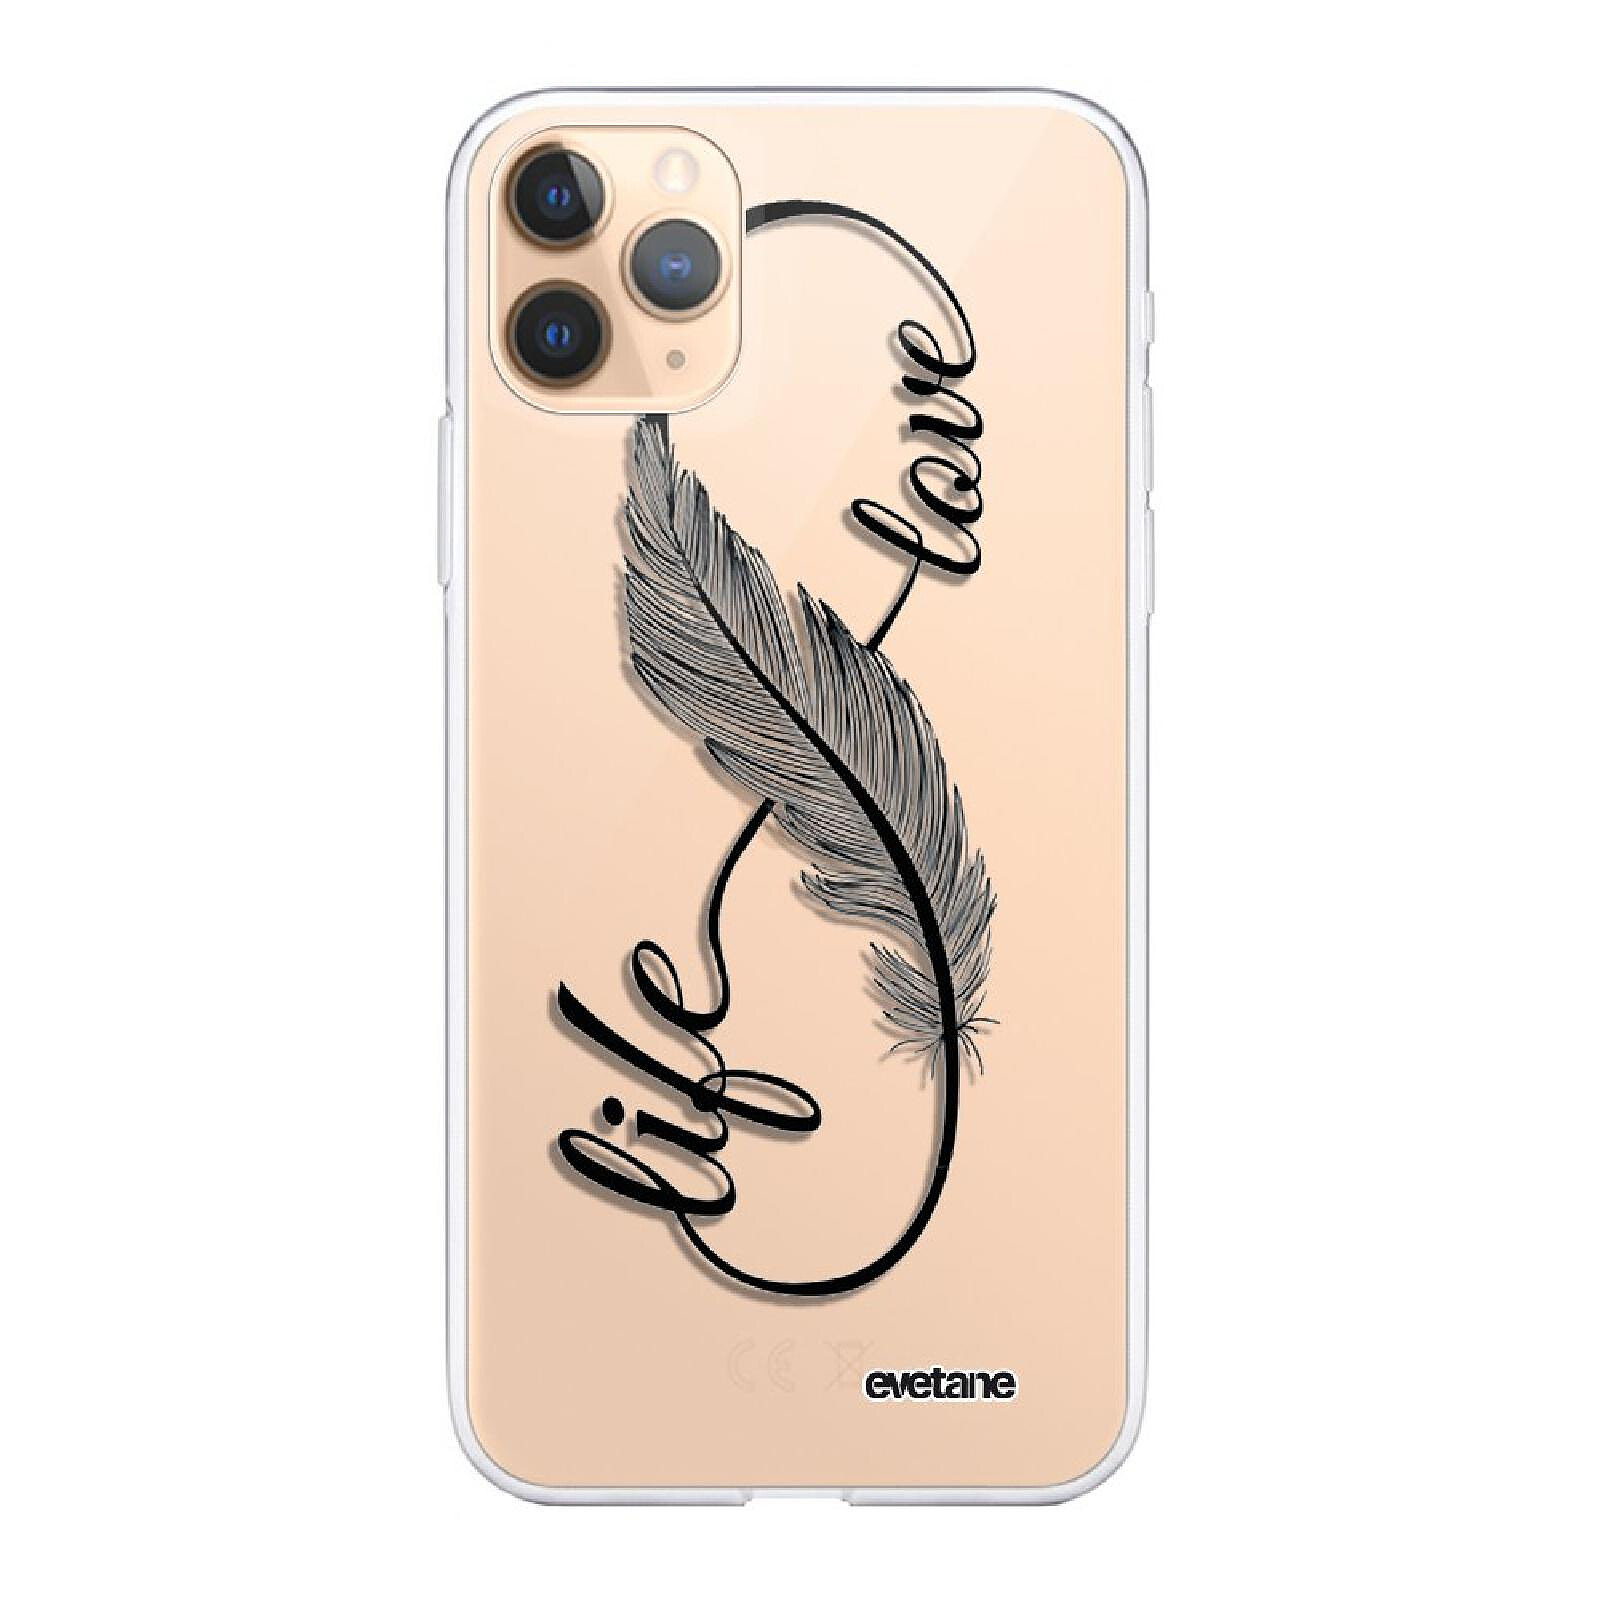 Evetane Coque iPhone 11 Pro Max silicone transparente Motif Chute De Fleurs  ultra resistant - Coque téléphone - LDLC